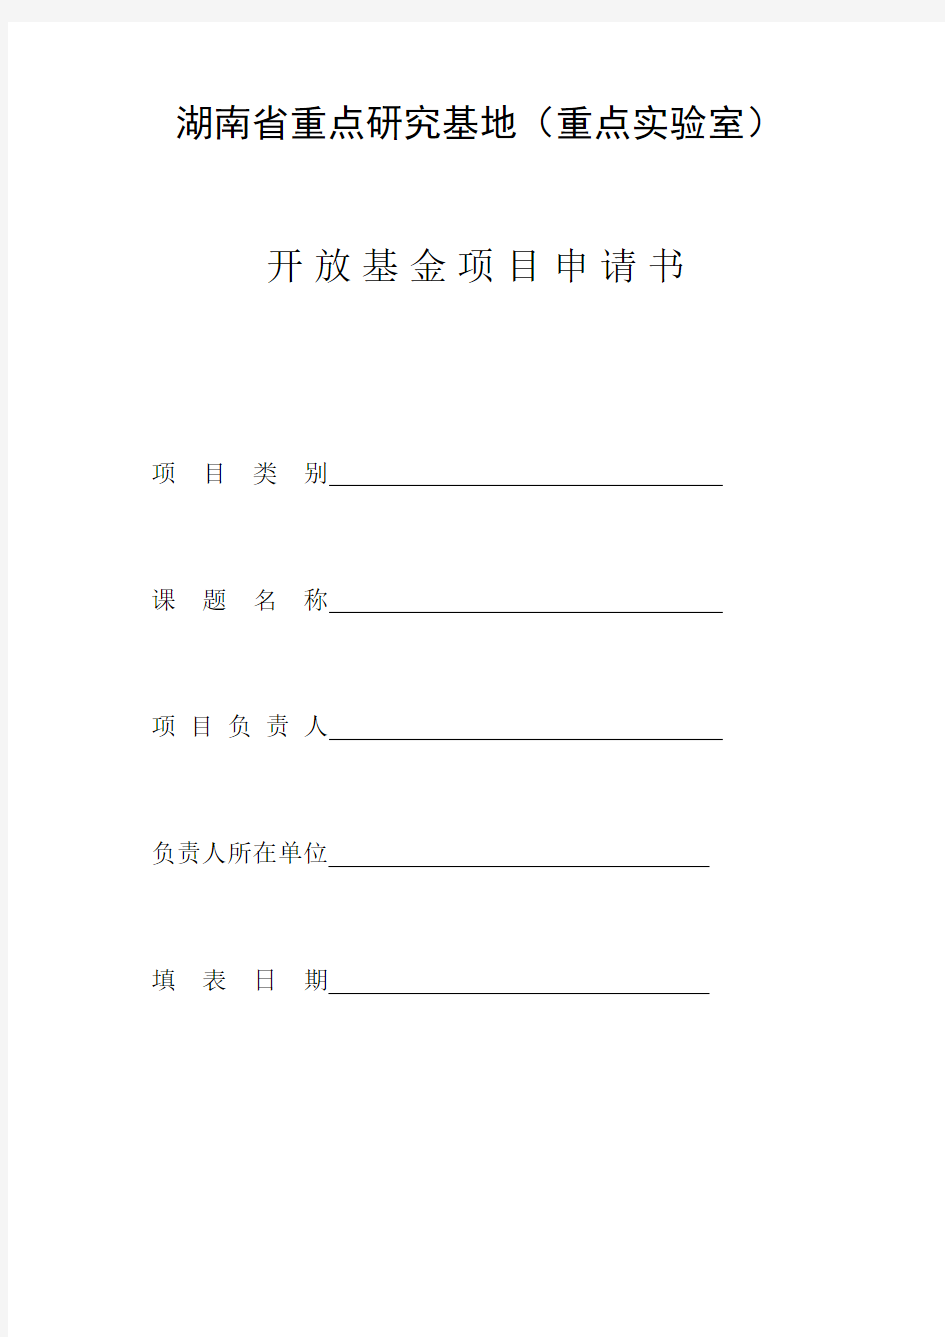 湖南省重点研究基地(重点实验室)开放基金项目申请书